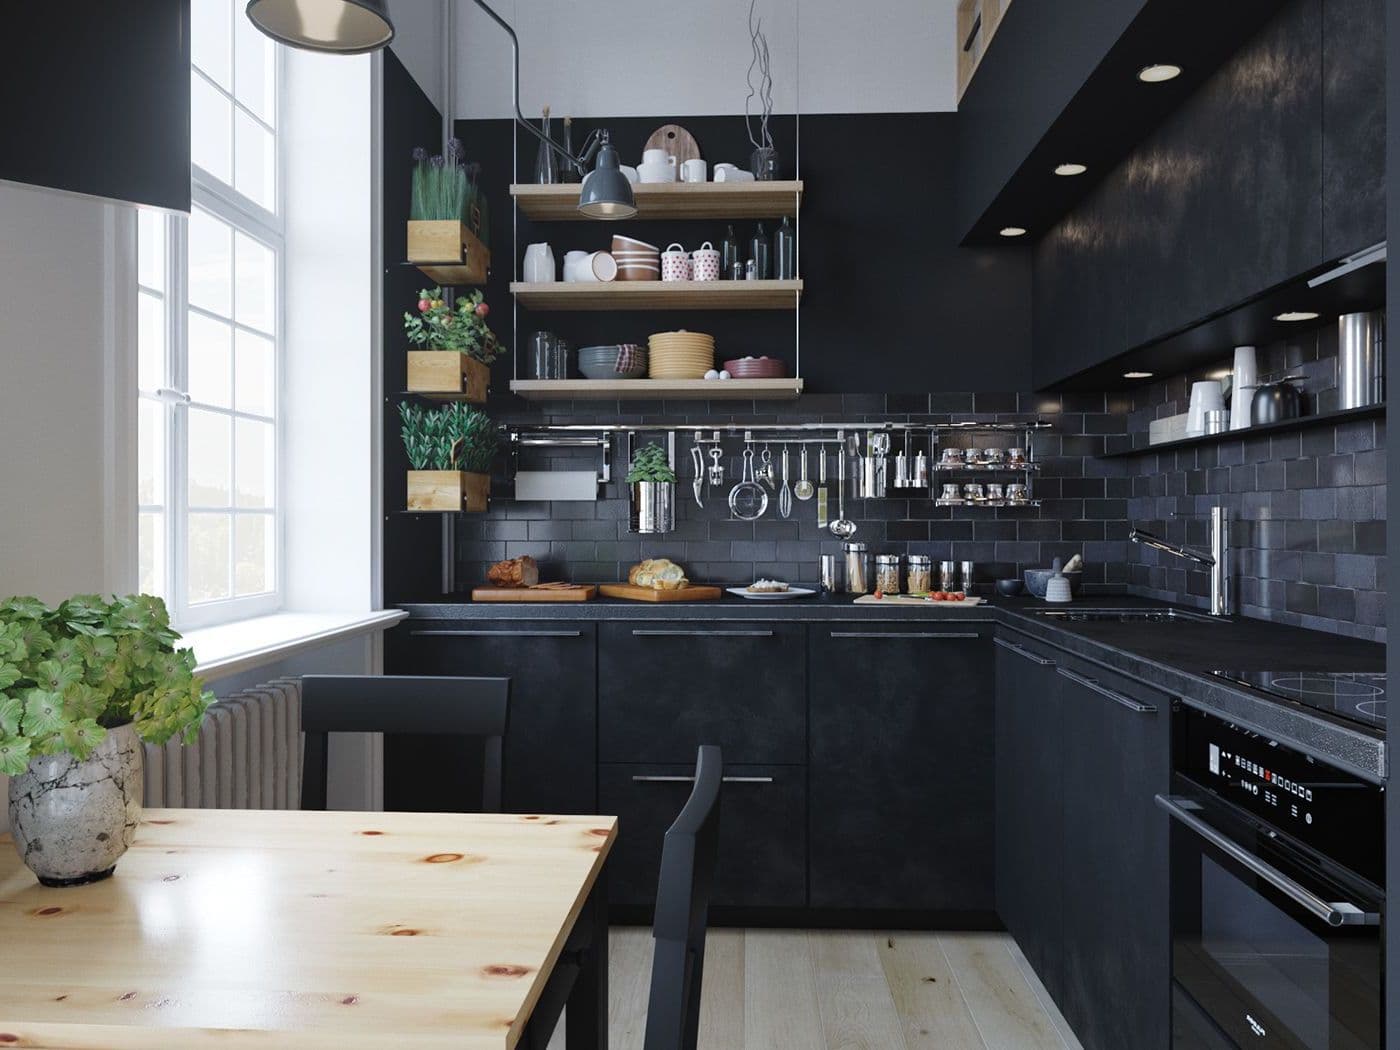 Грамотная организация хранения кухонных ящиков, шкафов и принадлежностей формирует атмосферу сбалансированного пространства